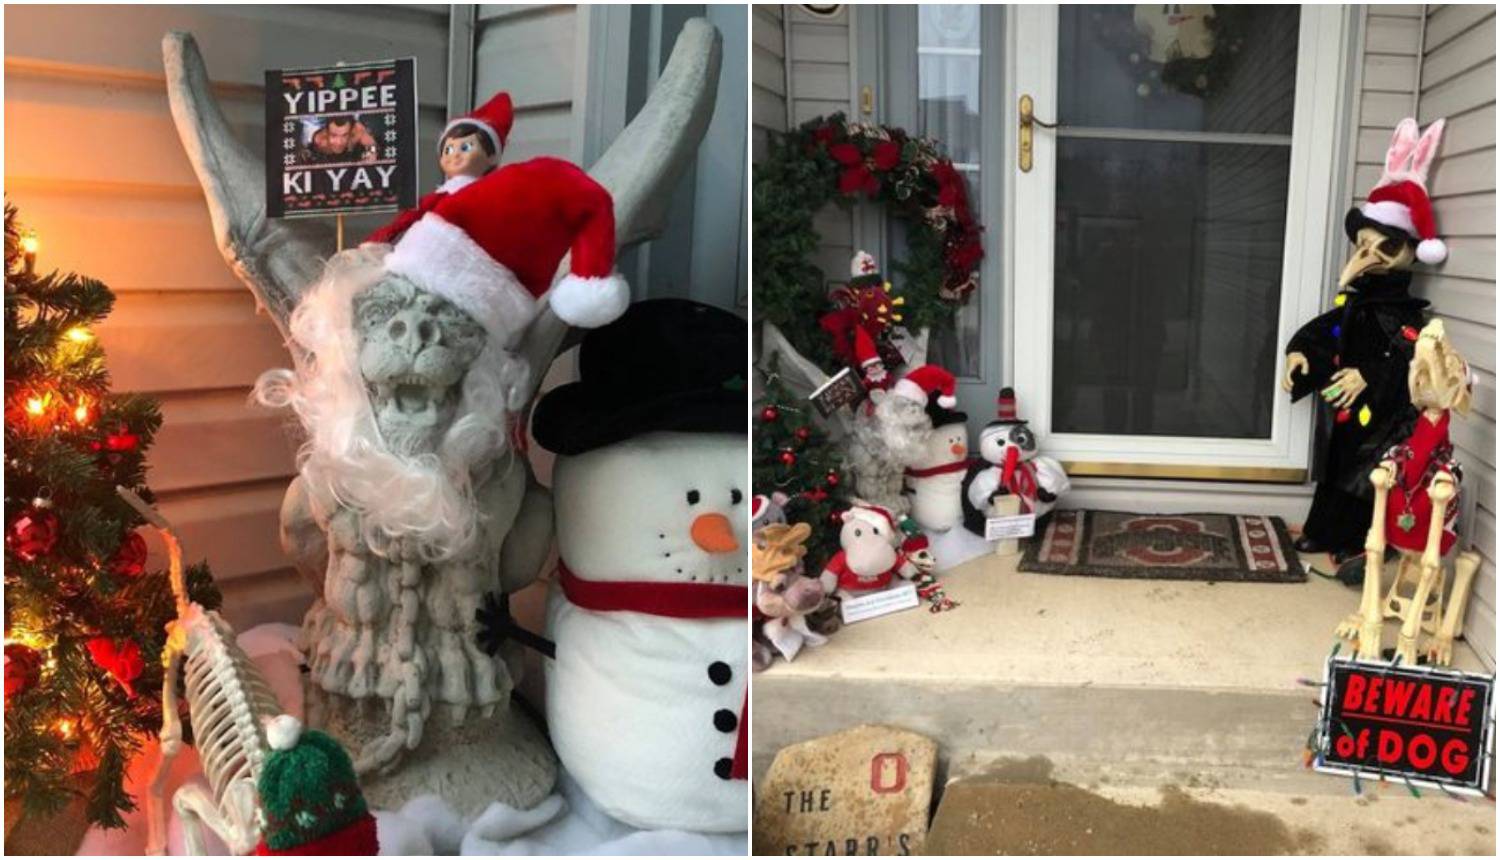 Njene božićne dekoracije živciraju susjede - no zato ih ona samo još više stavlja